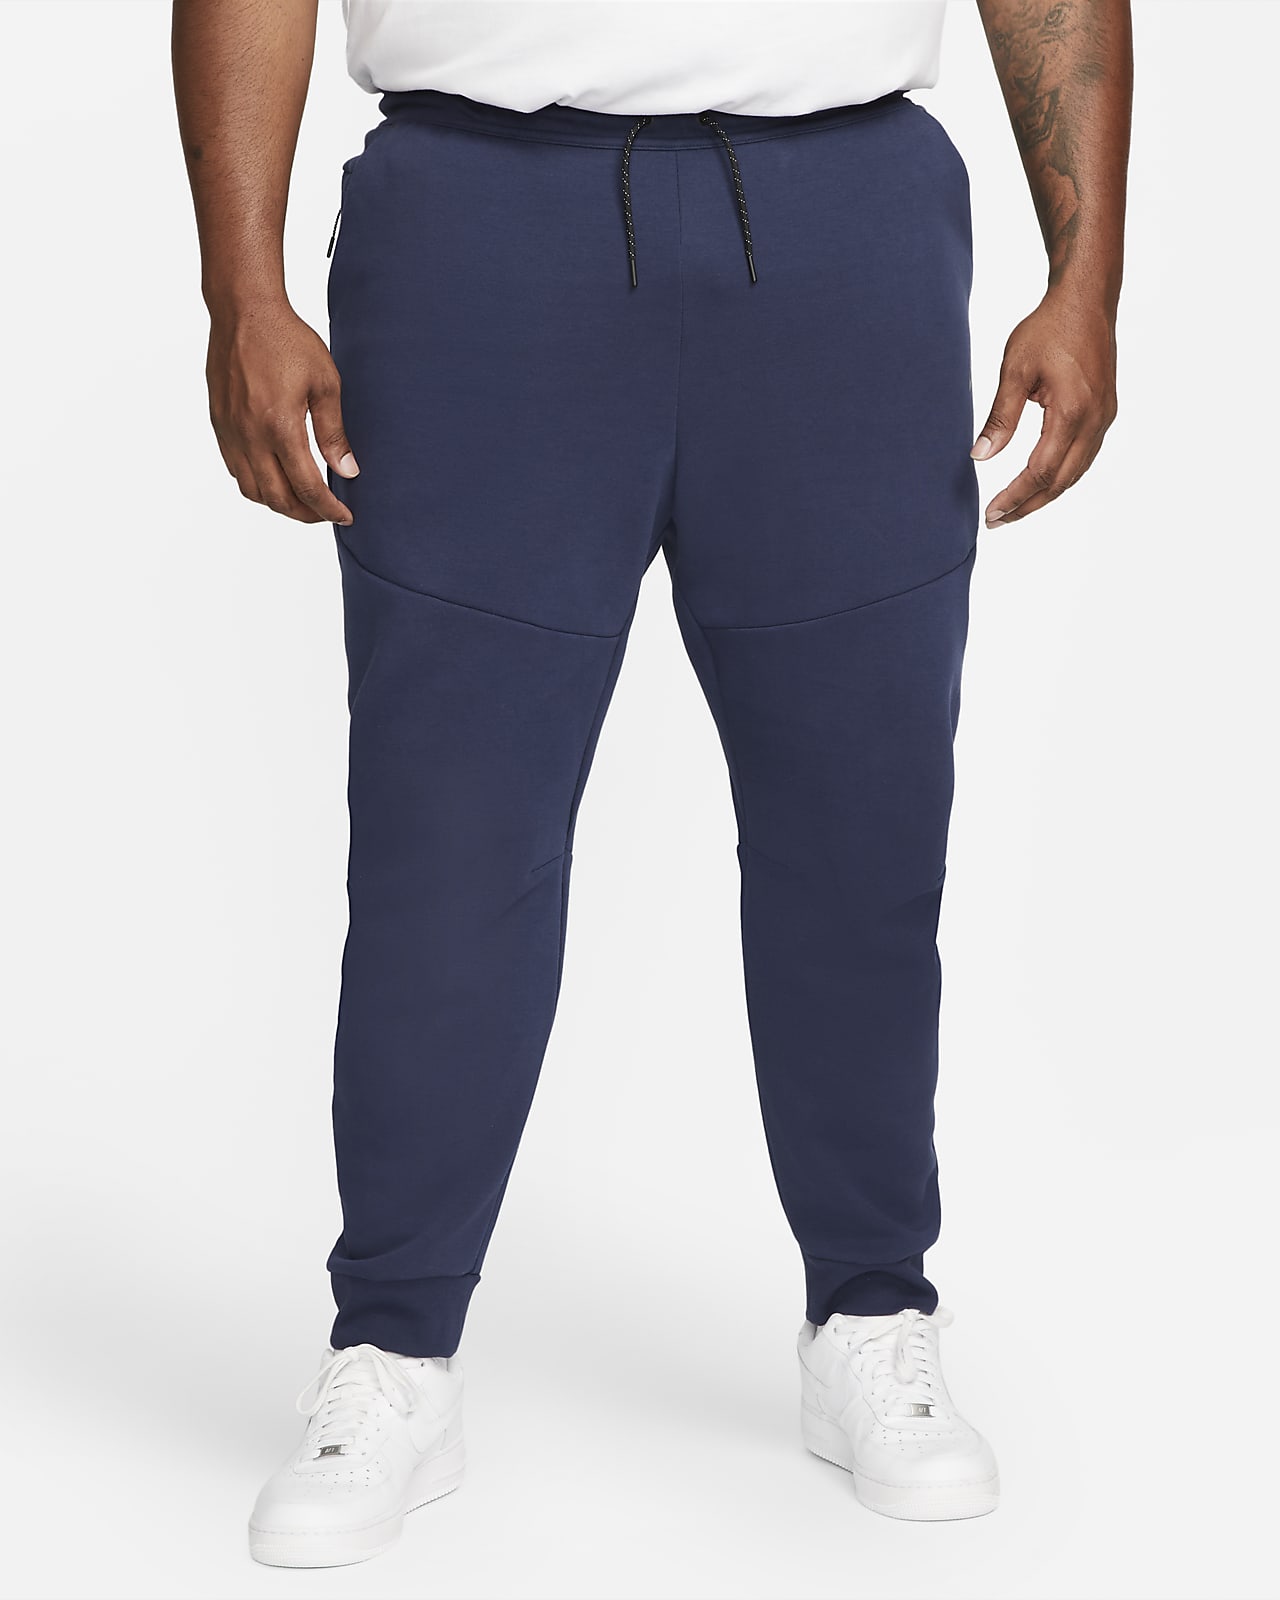 Nike Sportswear Tech Fleece Men's Joggers.